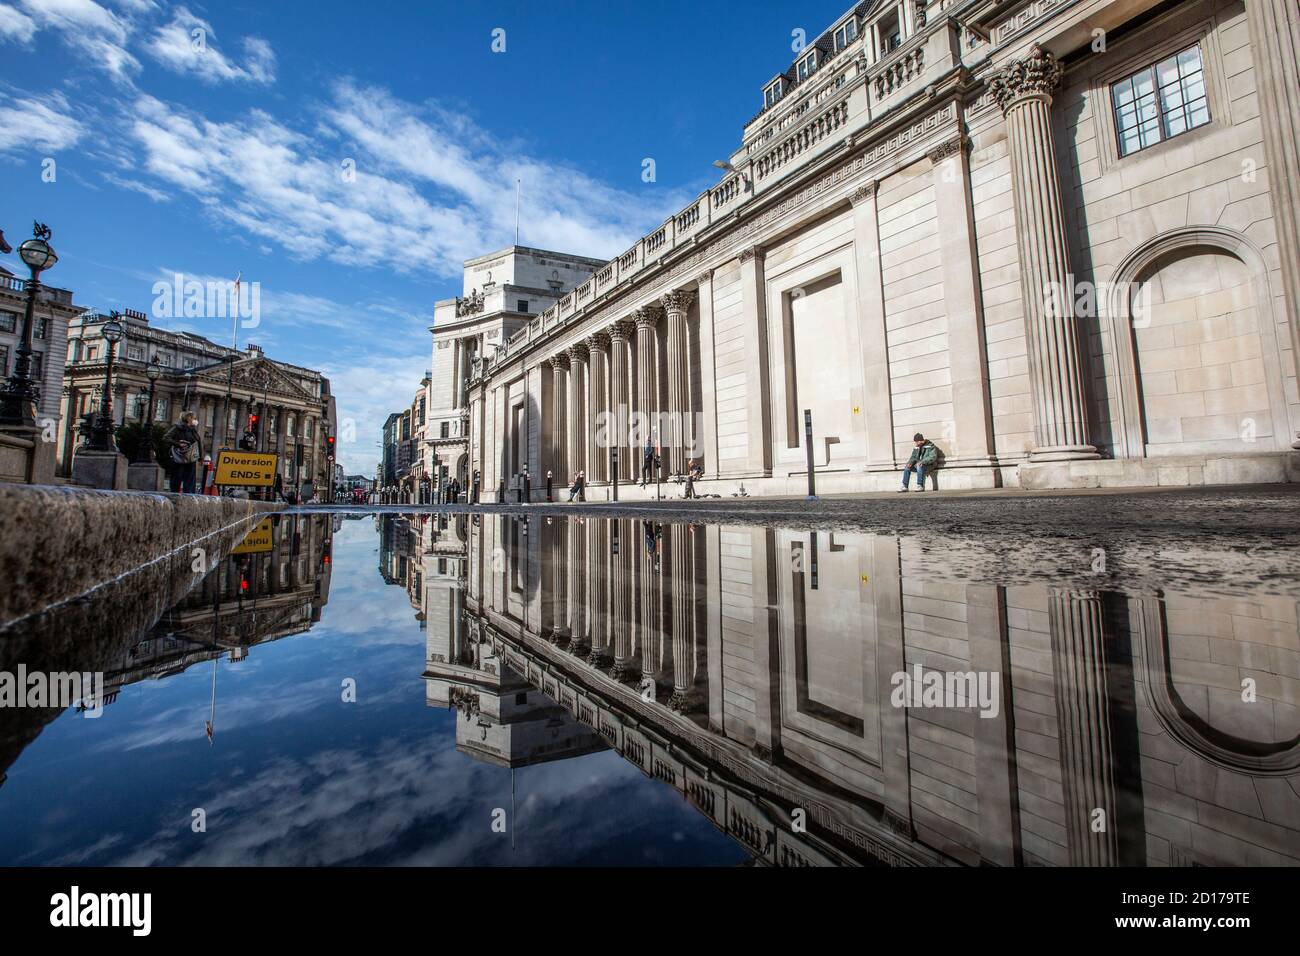 Bank of England e area di Royal Exchange nel cuore del quartiere finanziario della città di Londra si riflettono in un pozze su Threadneedle Street, Londra. Foto Stock